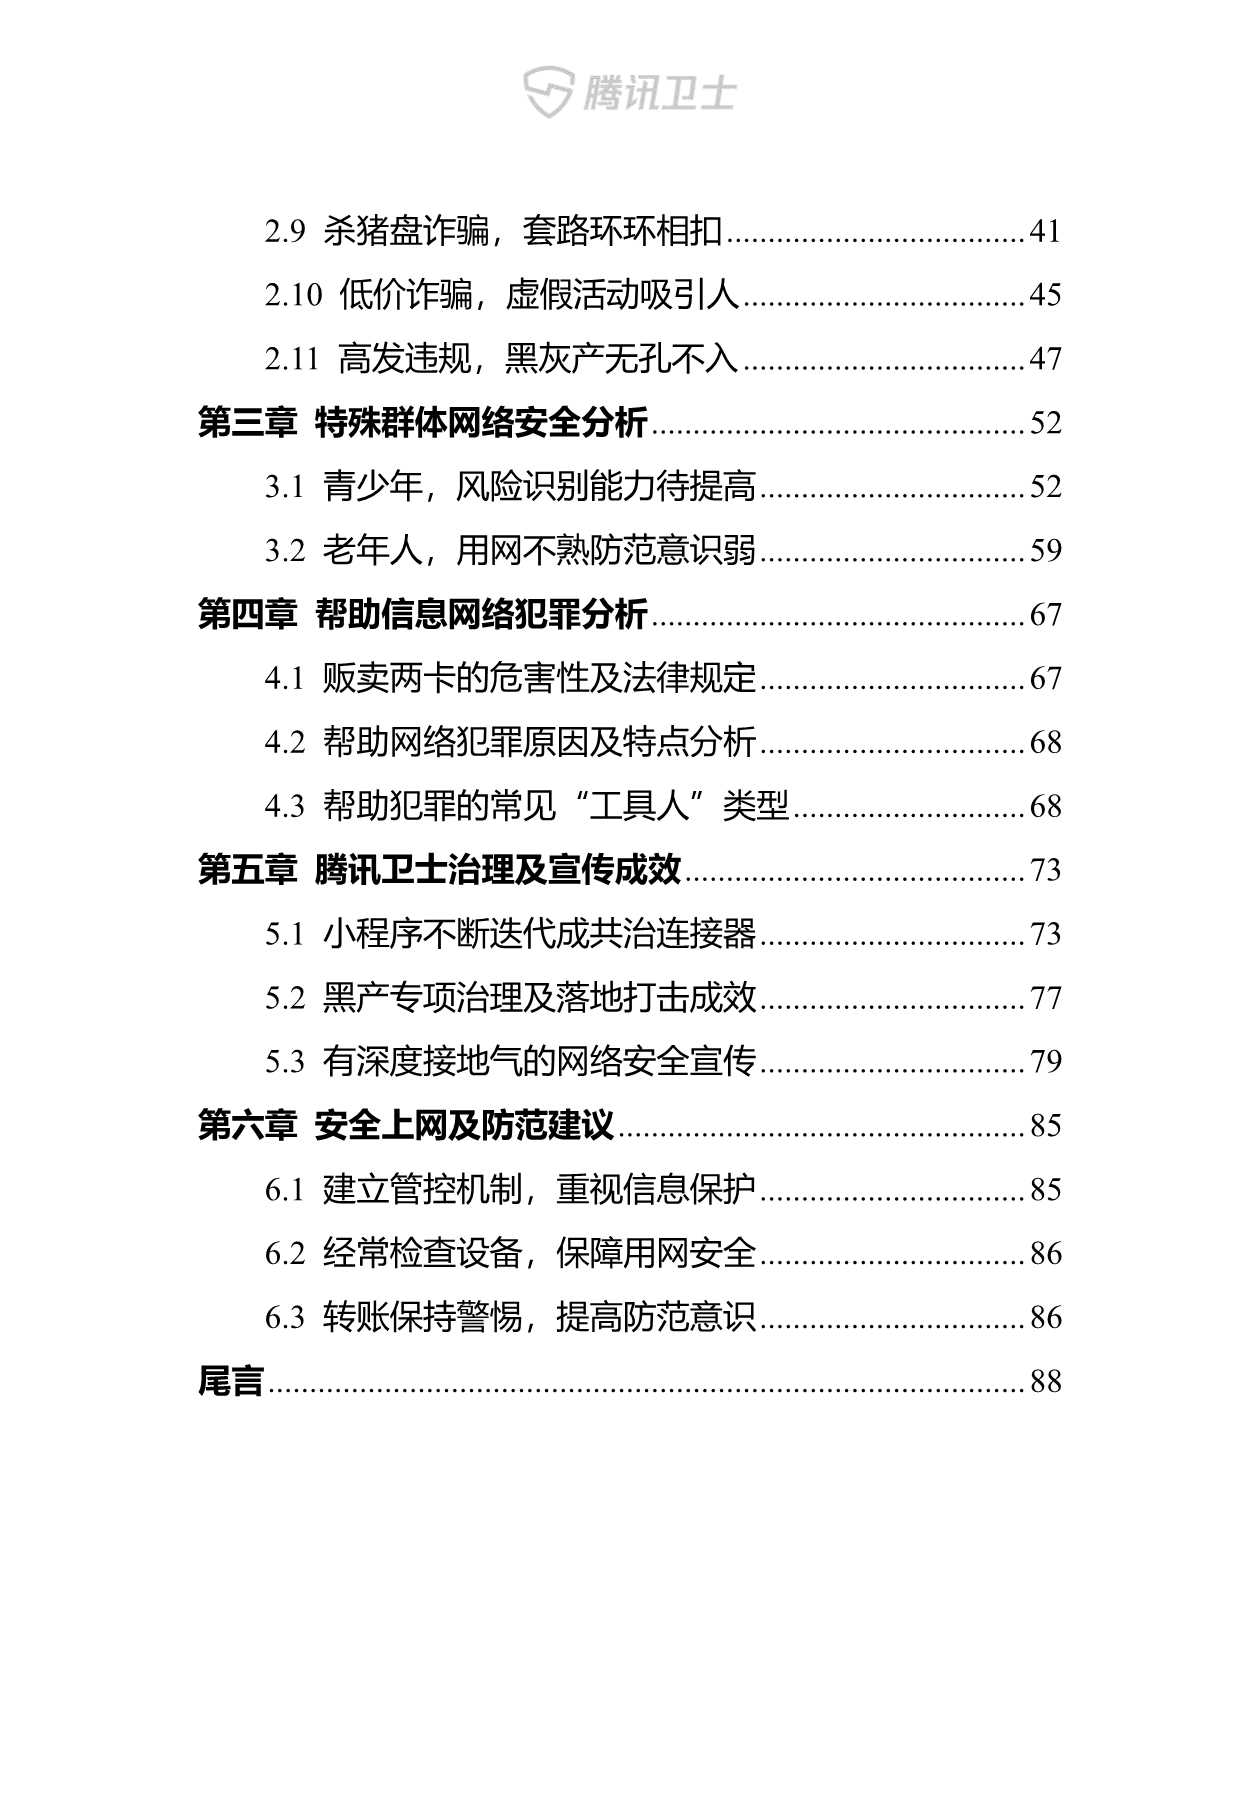 腾讯卫士-2021年网络安全报告-2022.01-90页